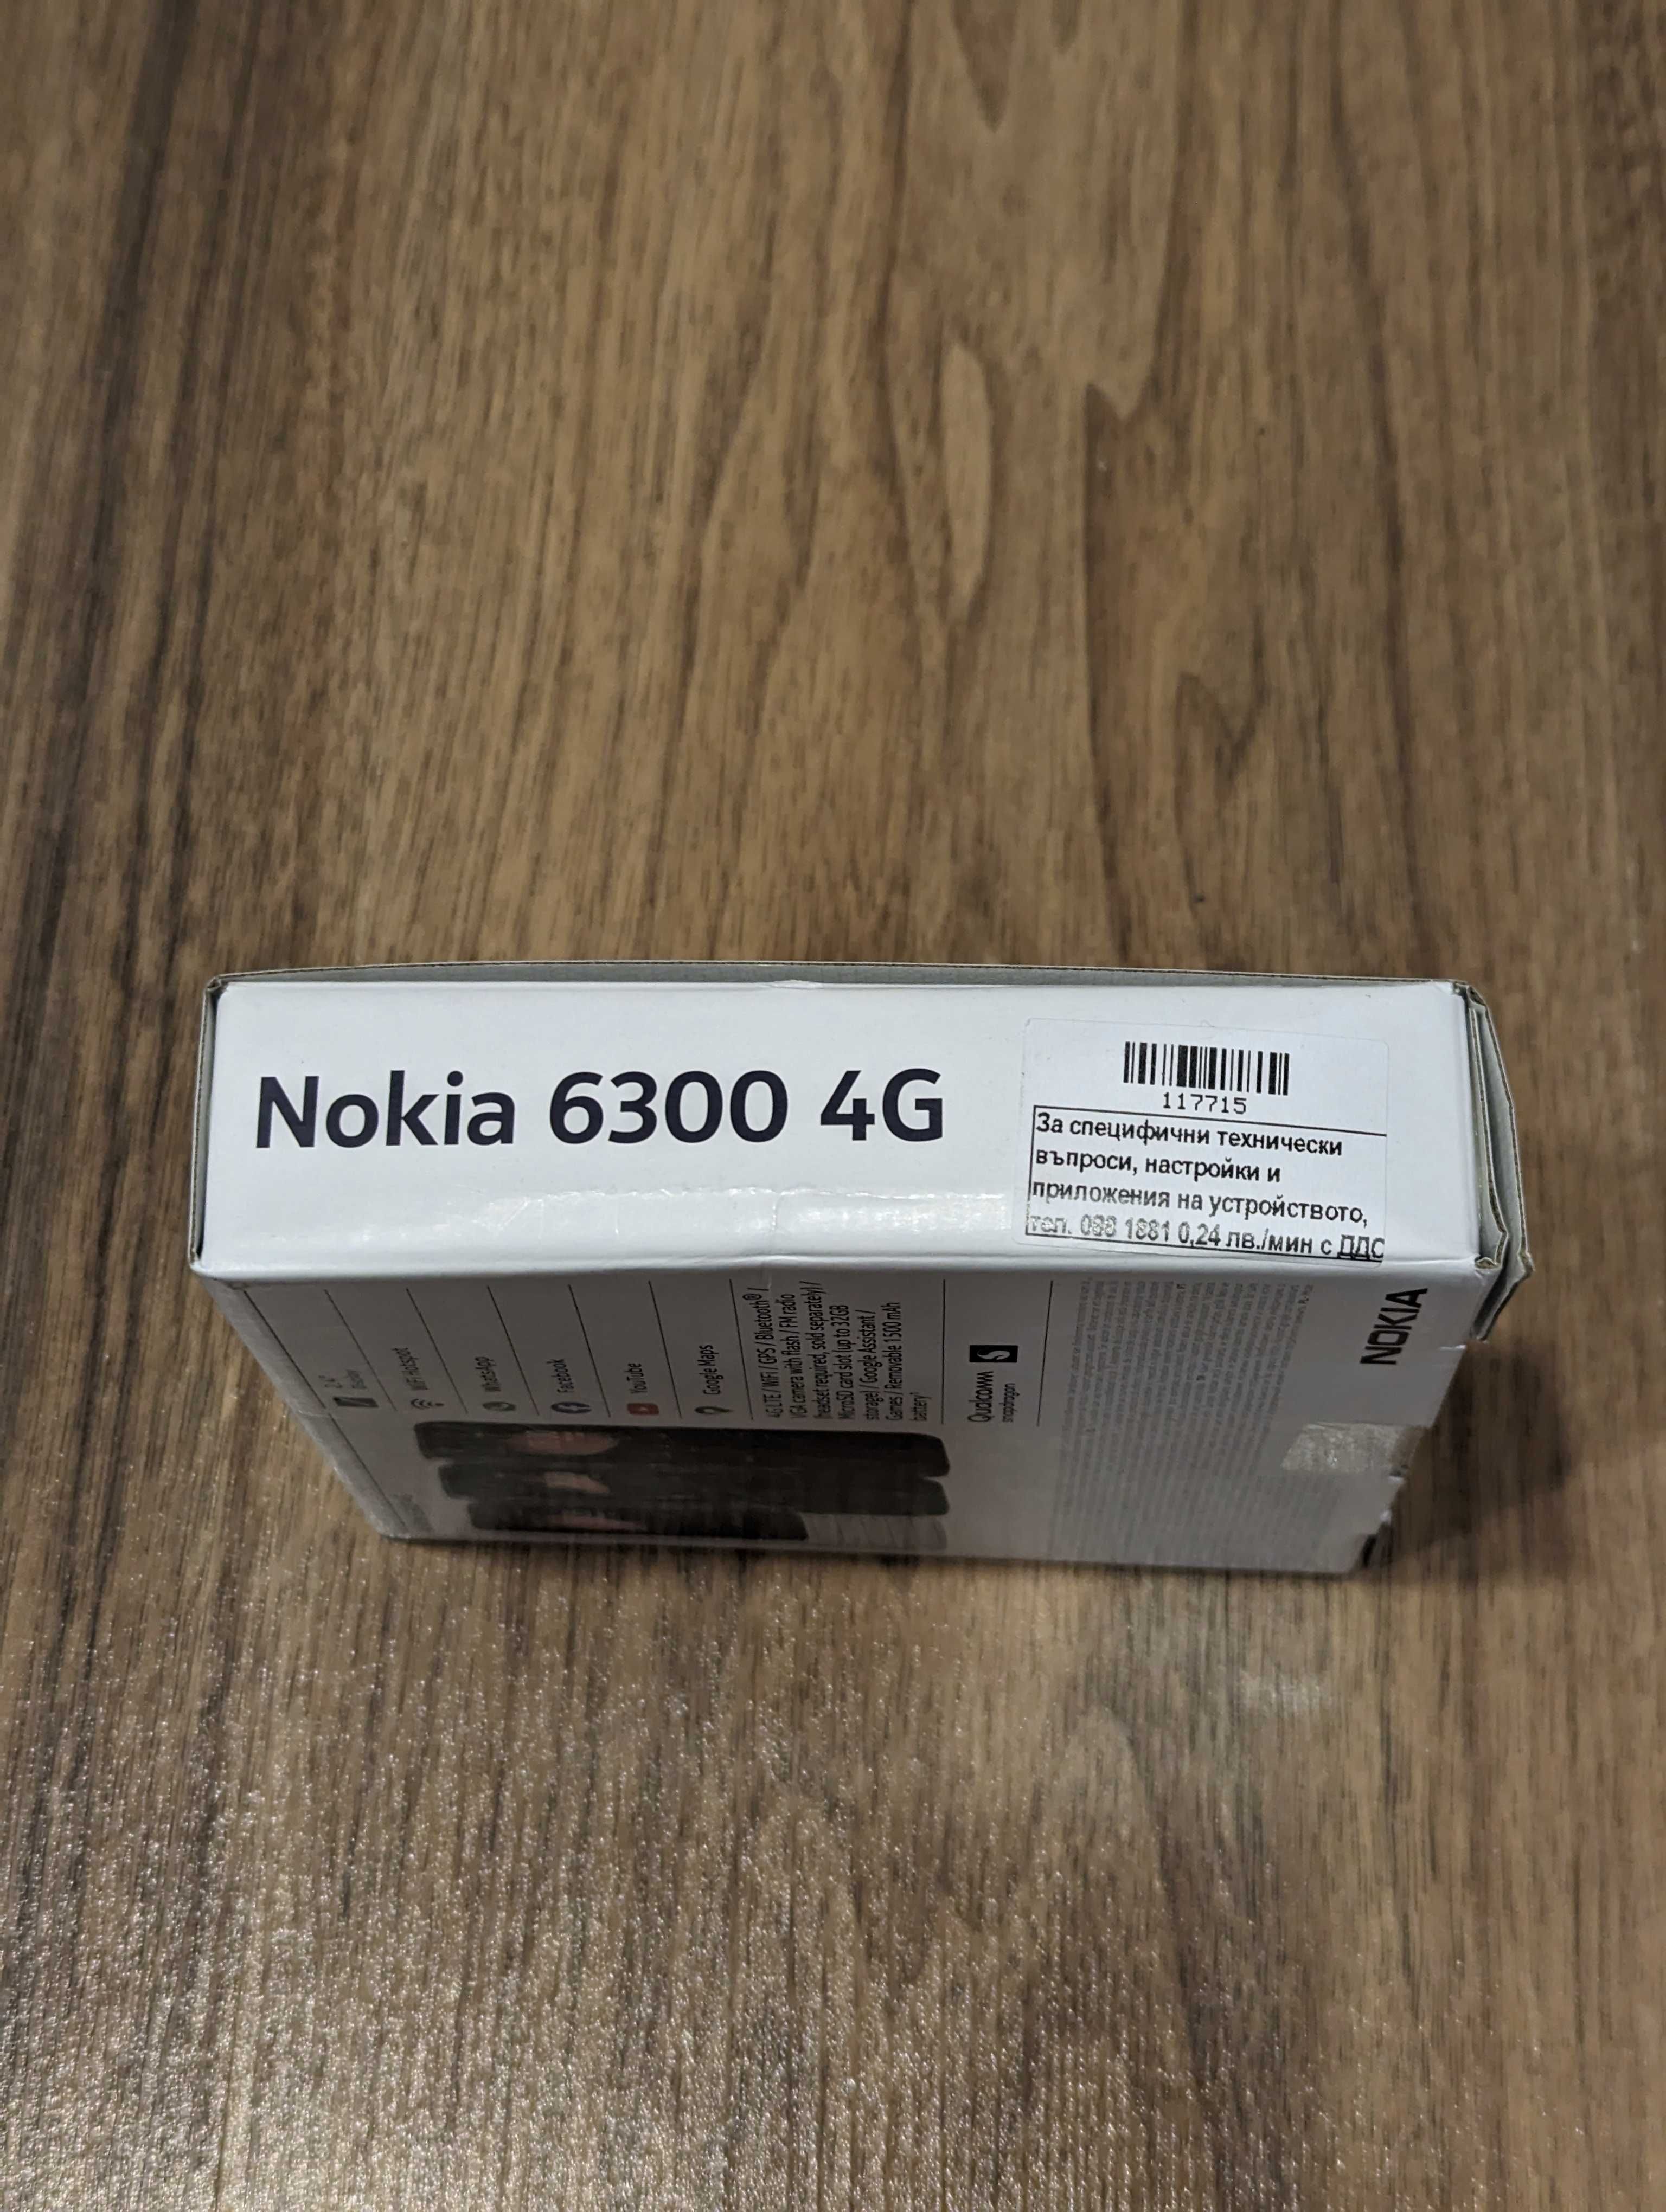 Нов телефон Nokia 6300 4G